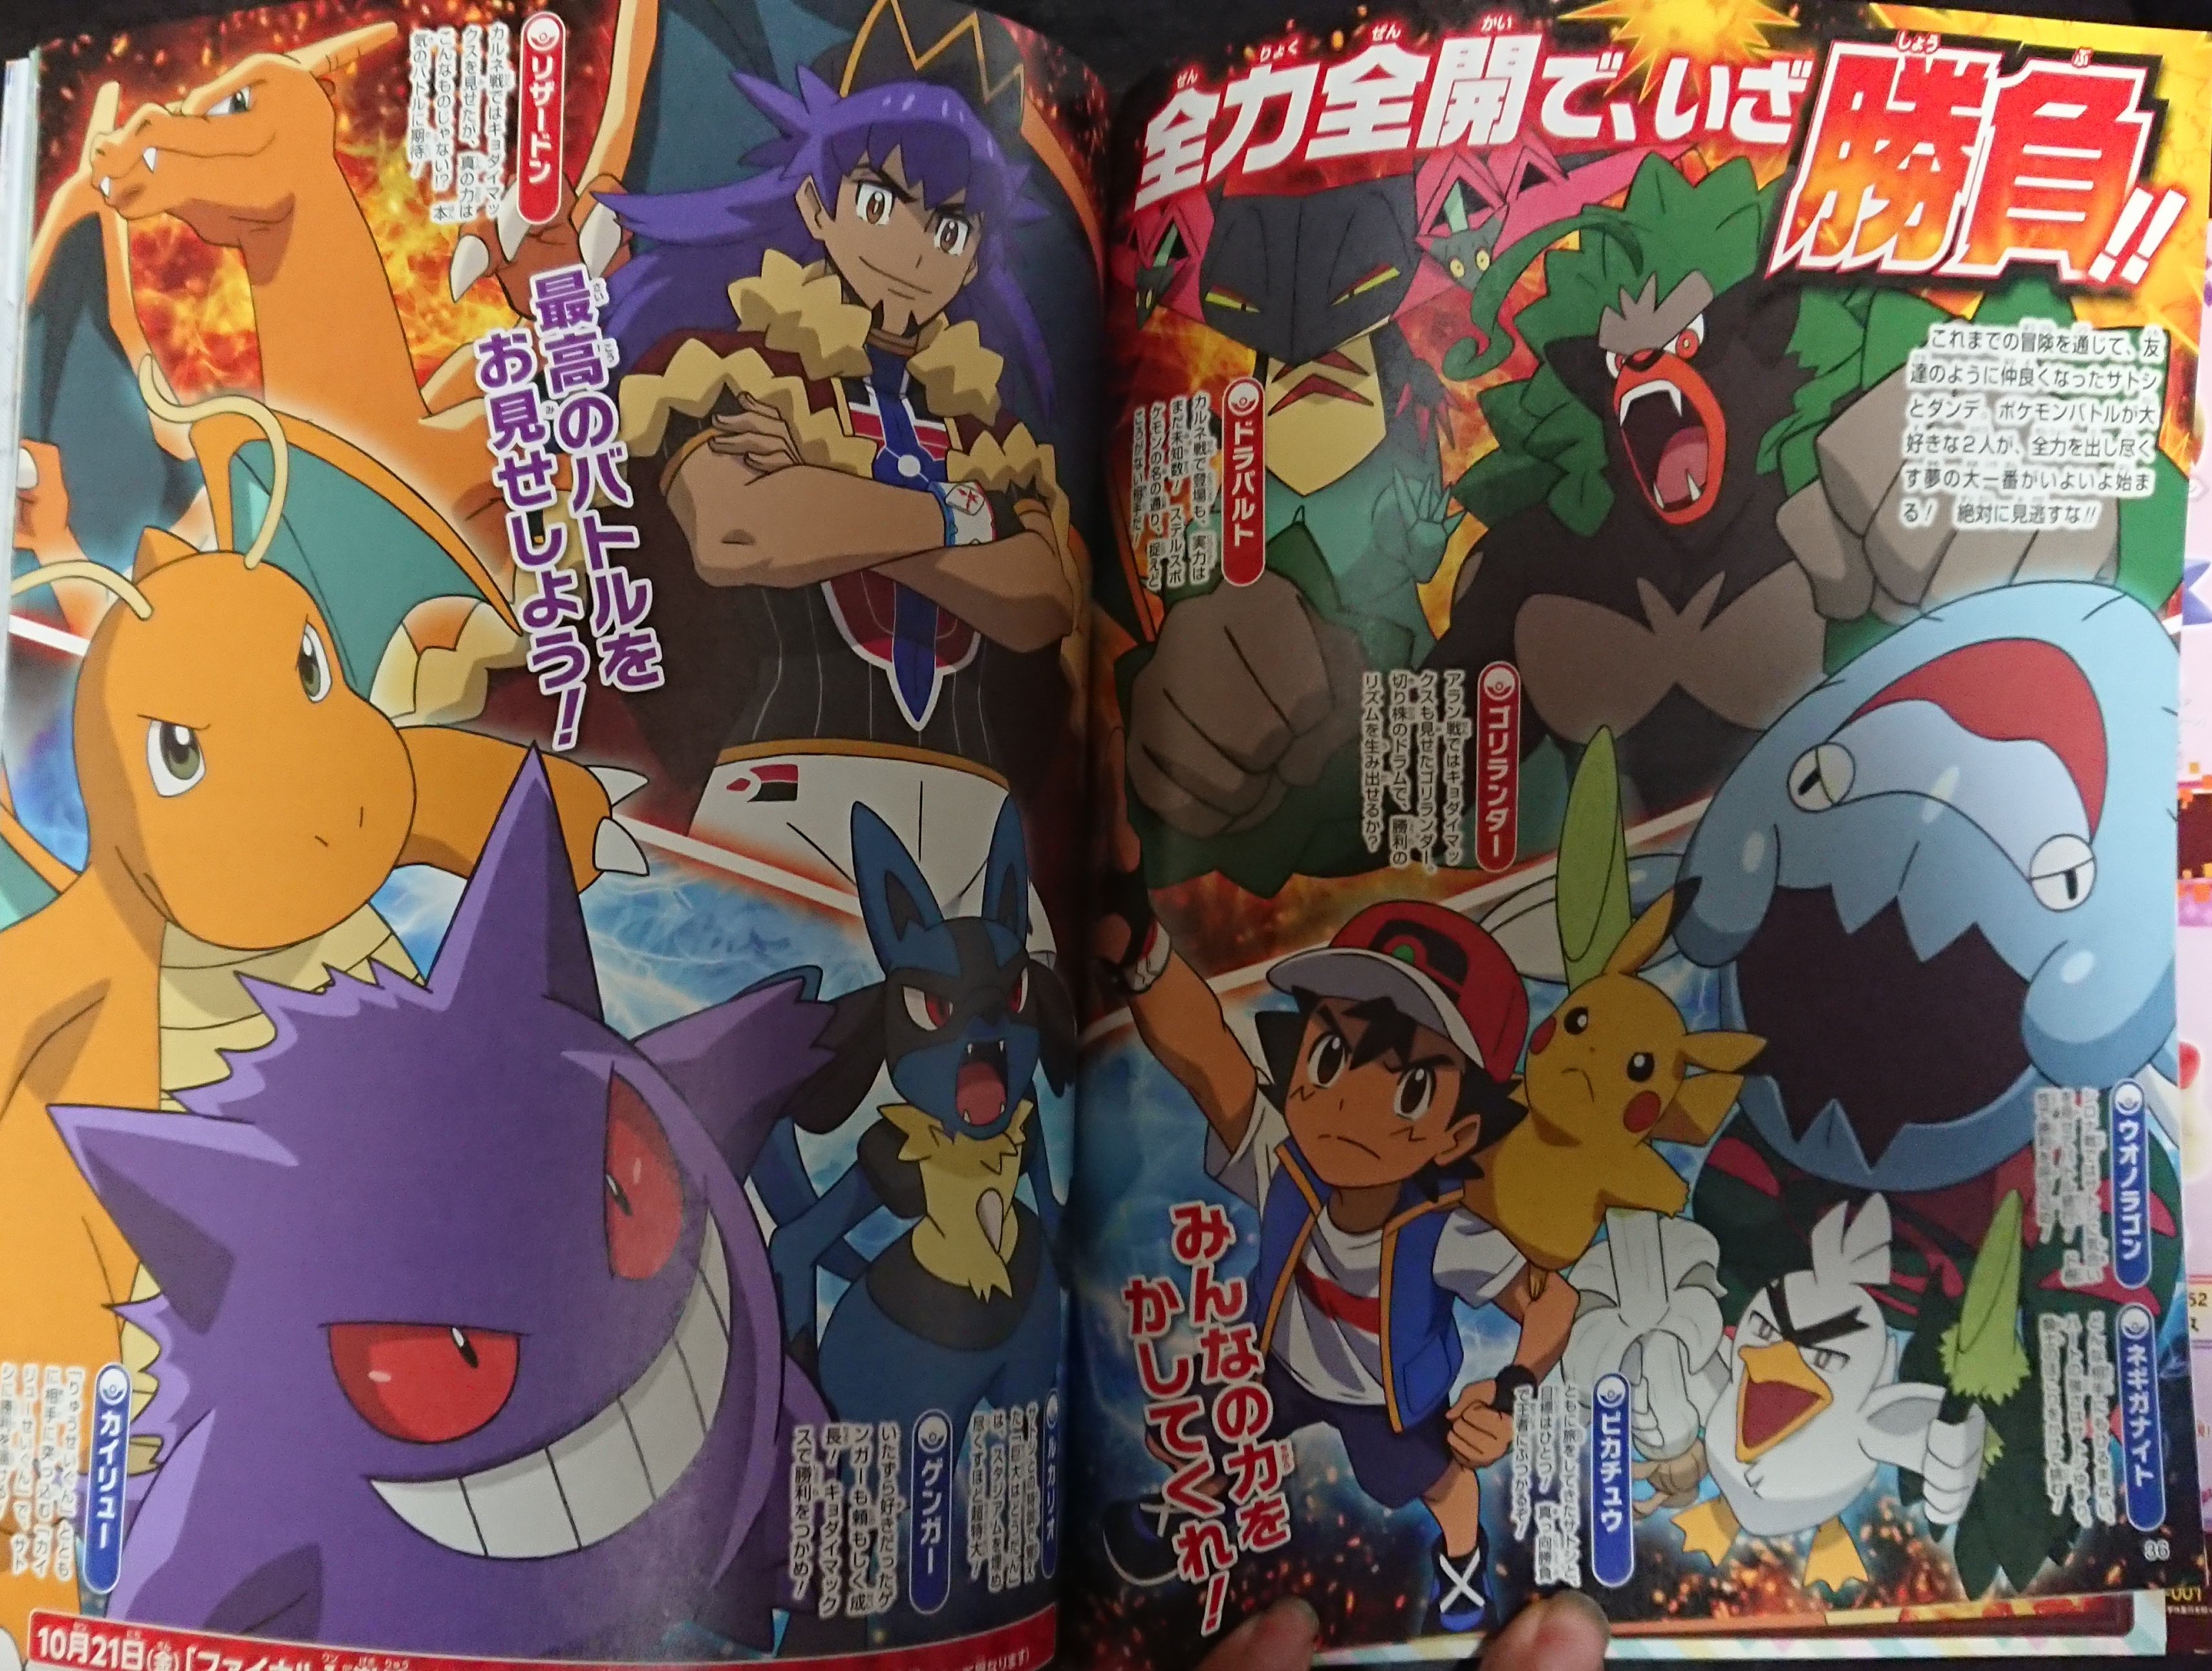 Pokémon: vitória histórica de Ash no anime ganha data de